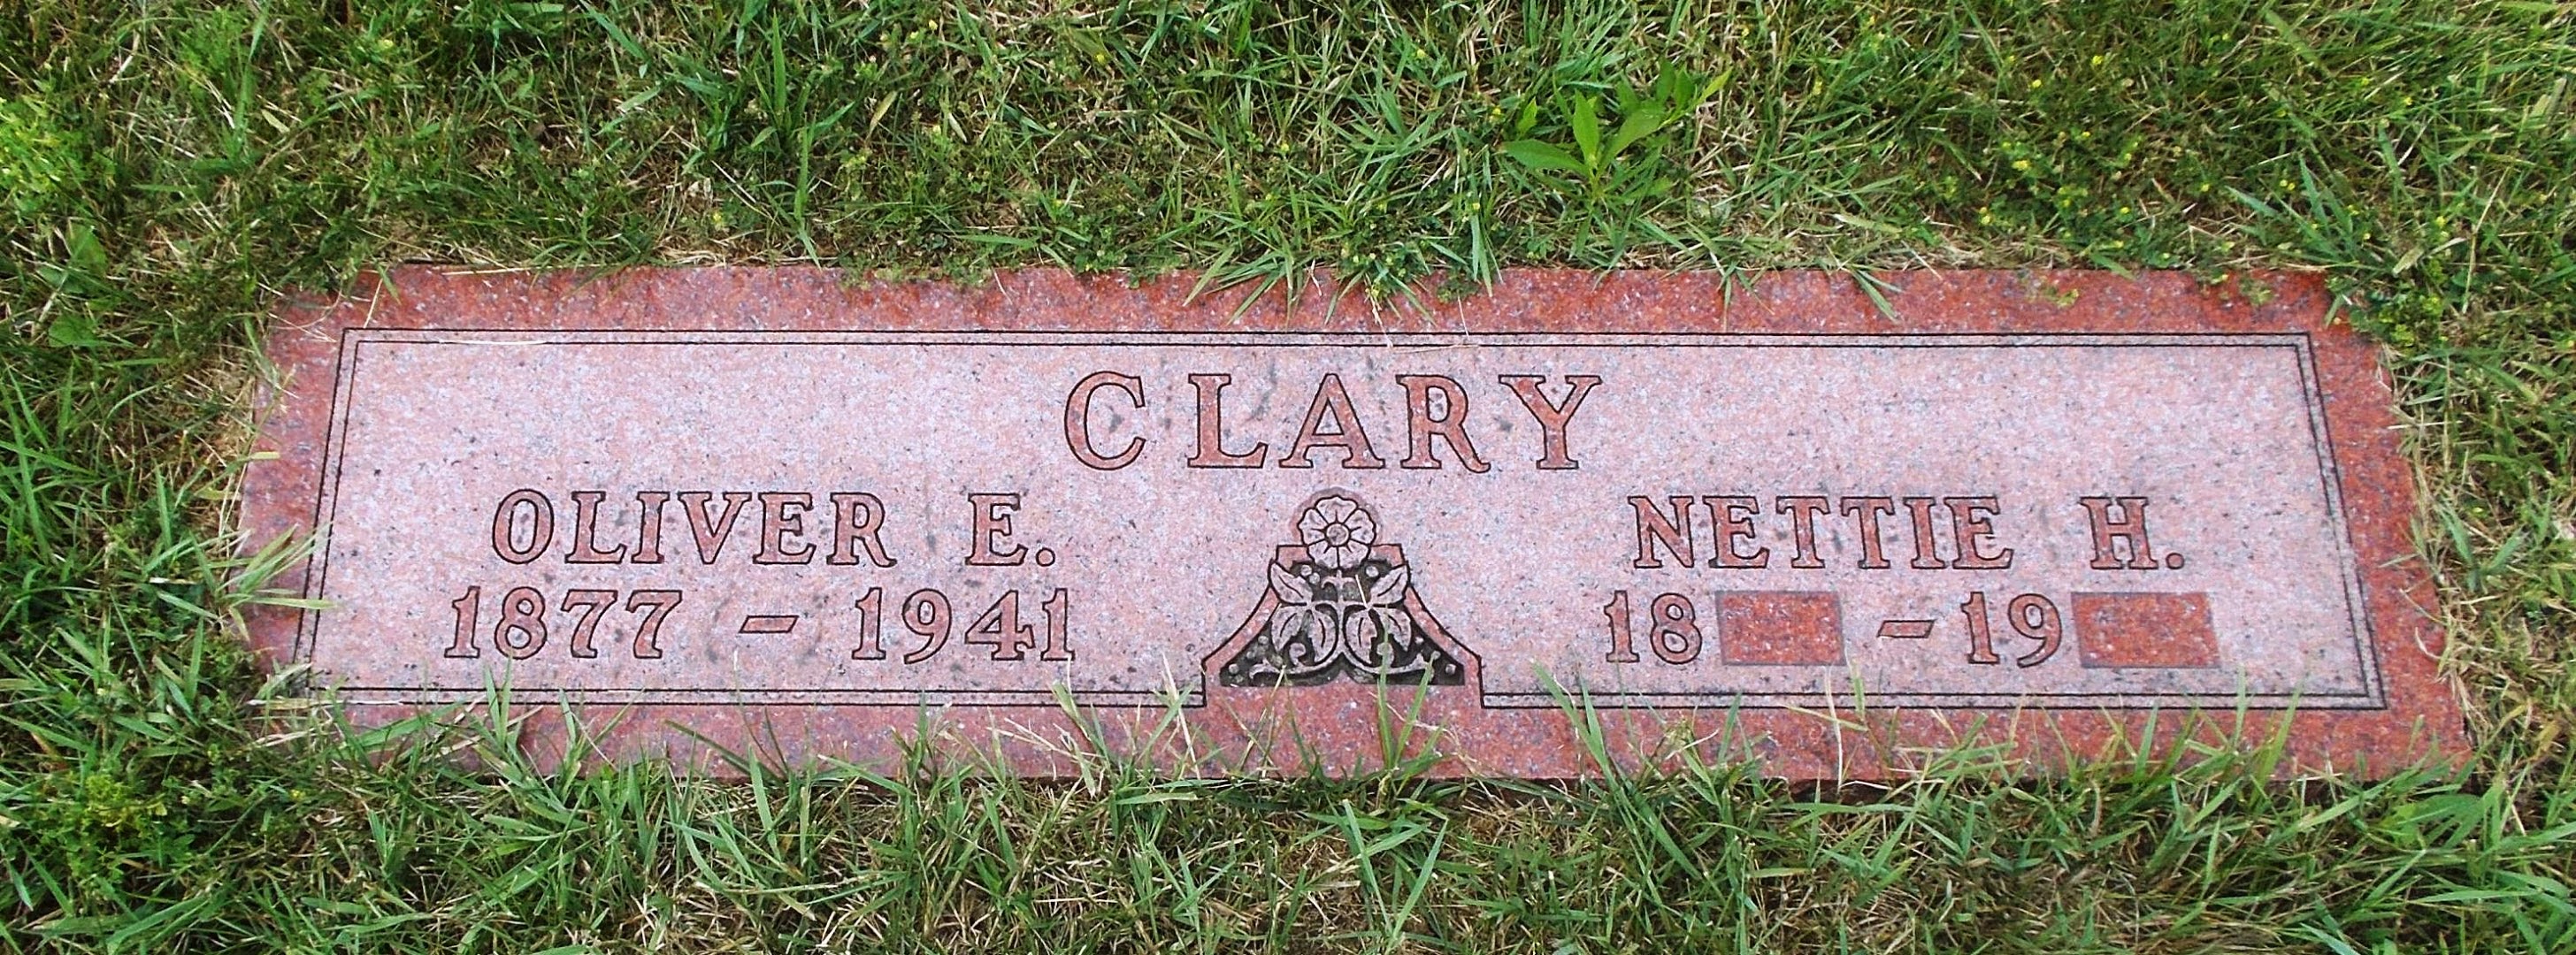 Nettie H Clary